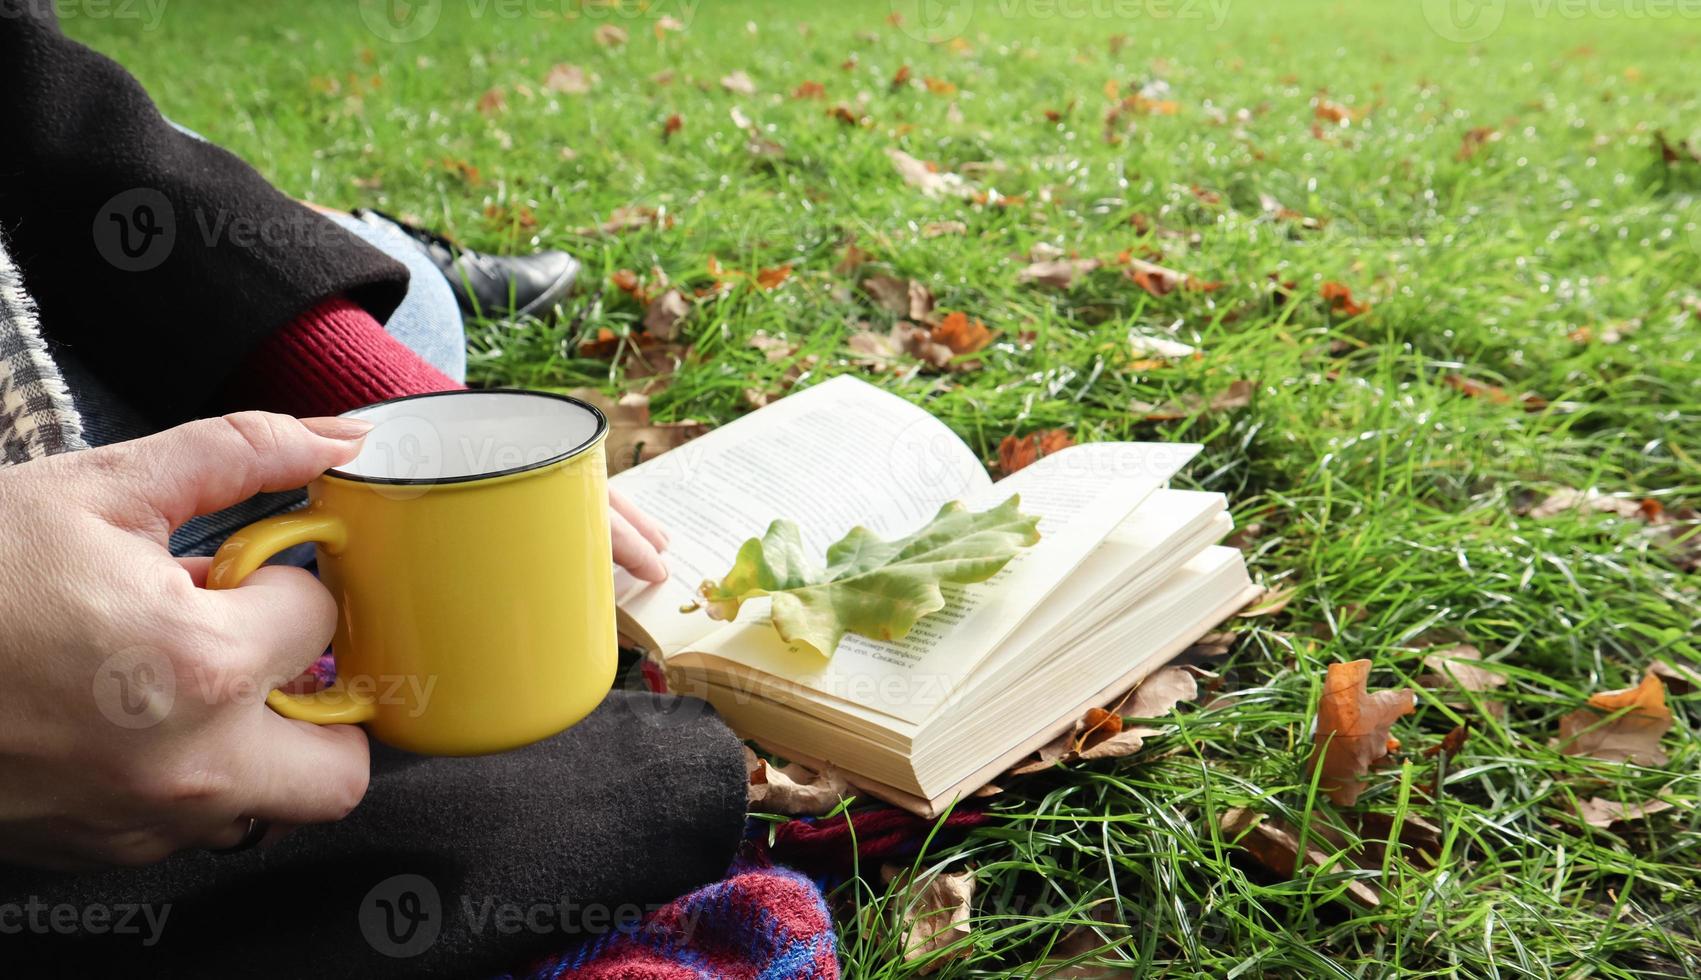 una niña se sienta en una manta en el bosque de otoño, lee un libro y bebe una bebida caliente de una taza amarilla en un parque de la ciudad en un día cálido en un prado verde. el concepto de lectura, relajación y comodidad. foto